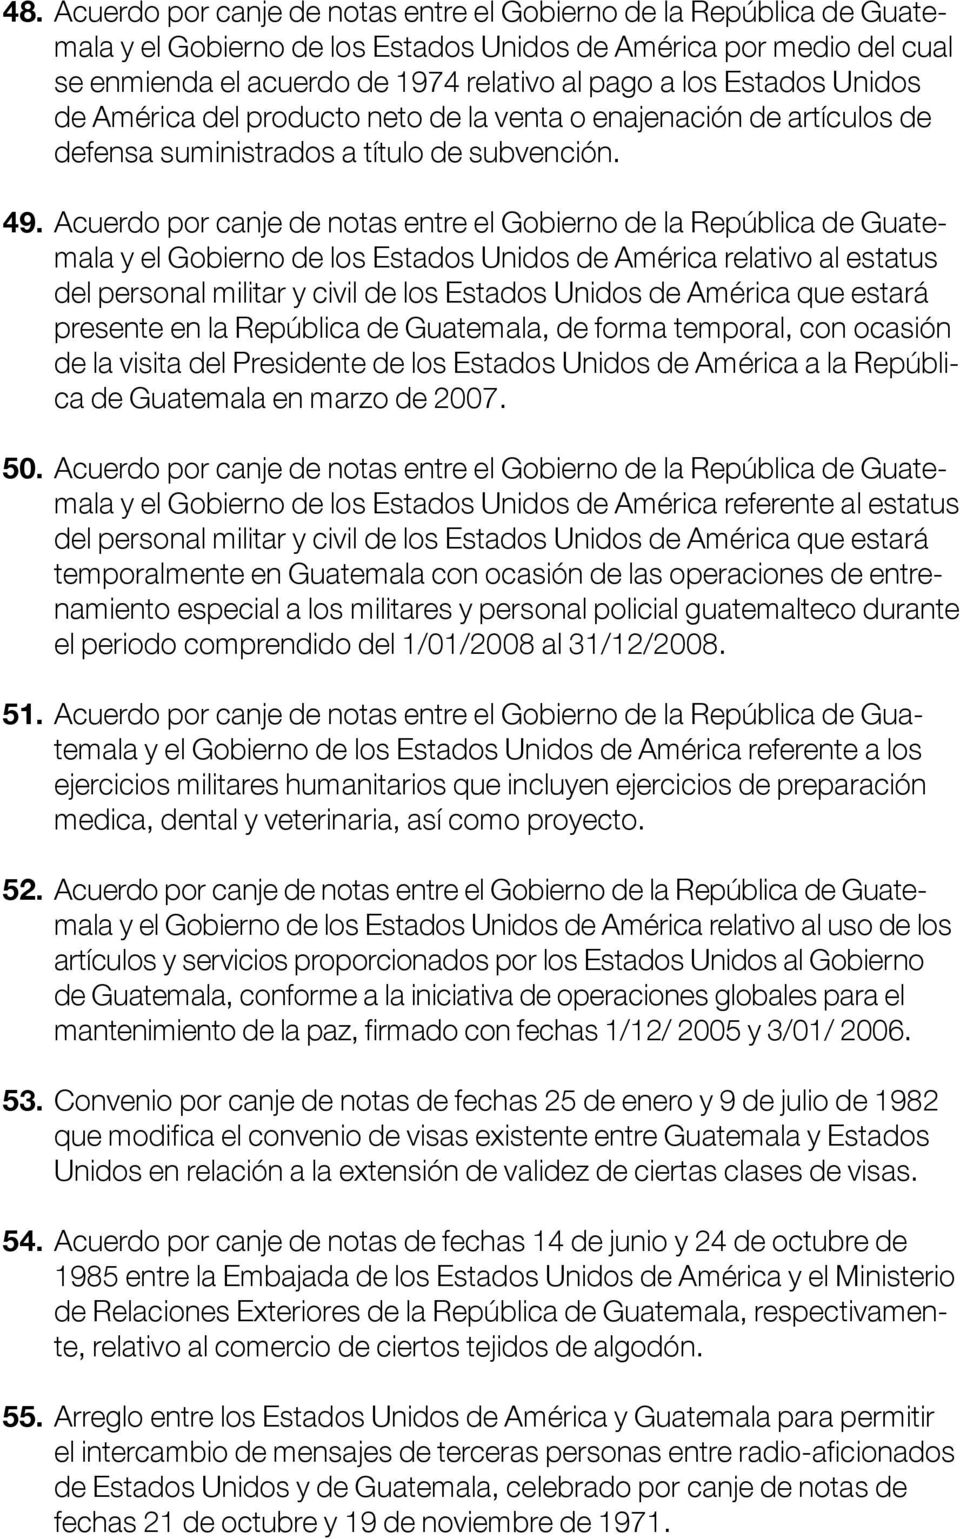 Acuerdo por canje de notas entre el Gobierno de la República de Guatemala y el Gobierno de los Estados Unidos de América relativo al estatus del personal militar y civil de los Estados Unidos de